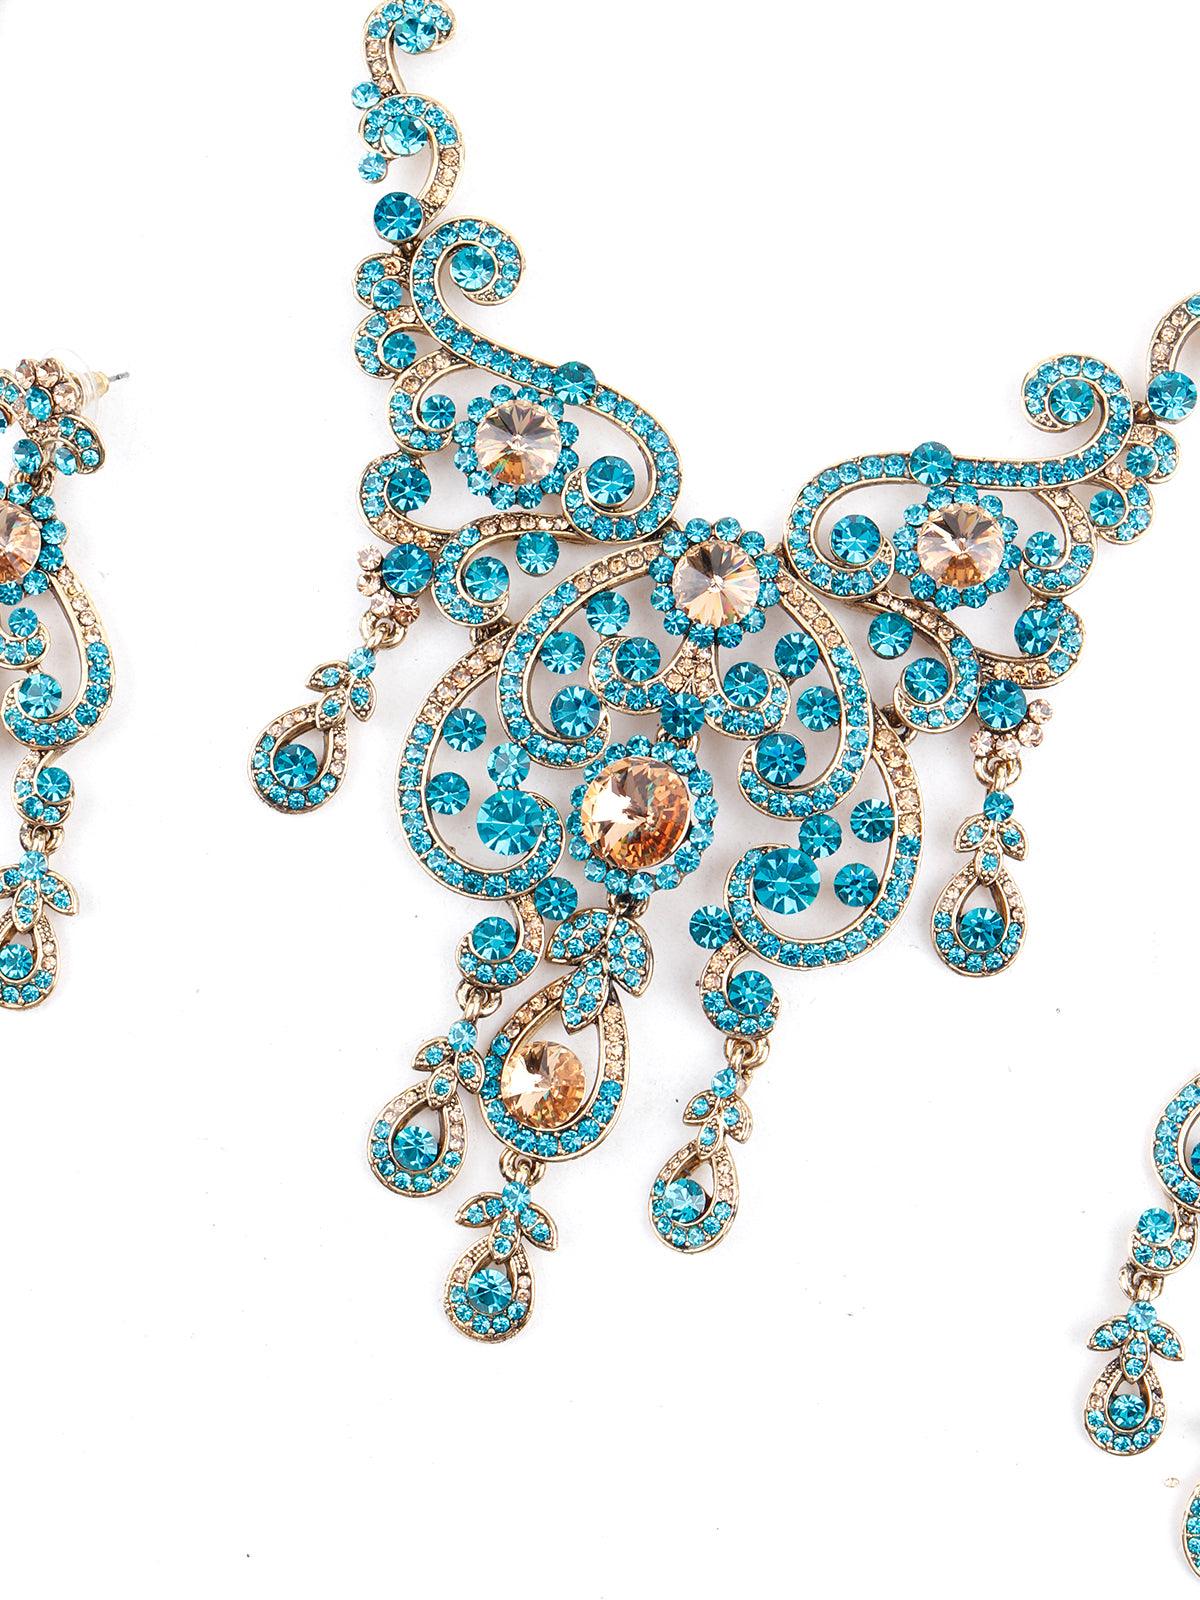 Blue Crystal Necklace Set - Odette